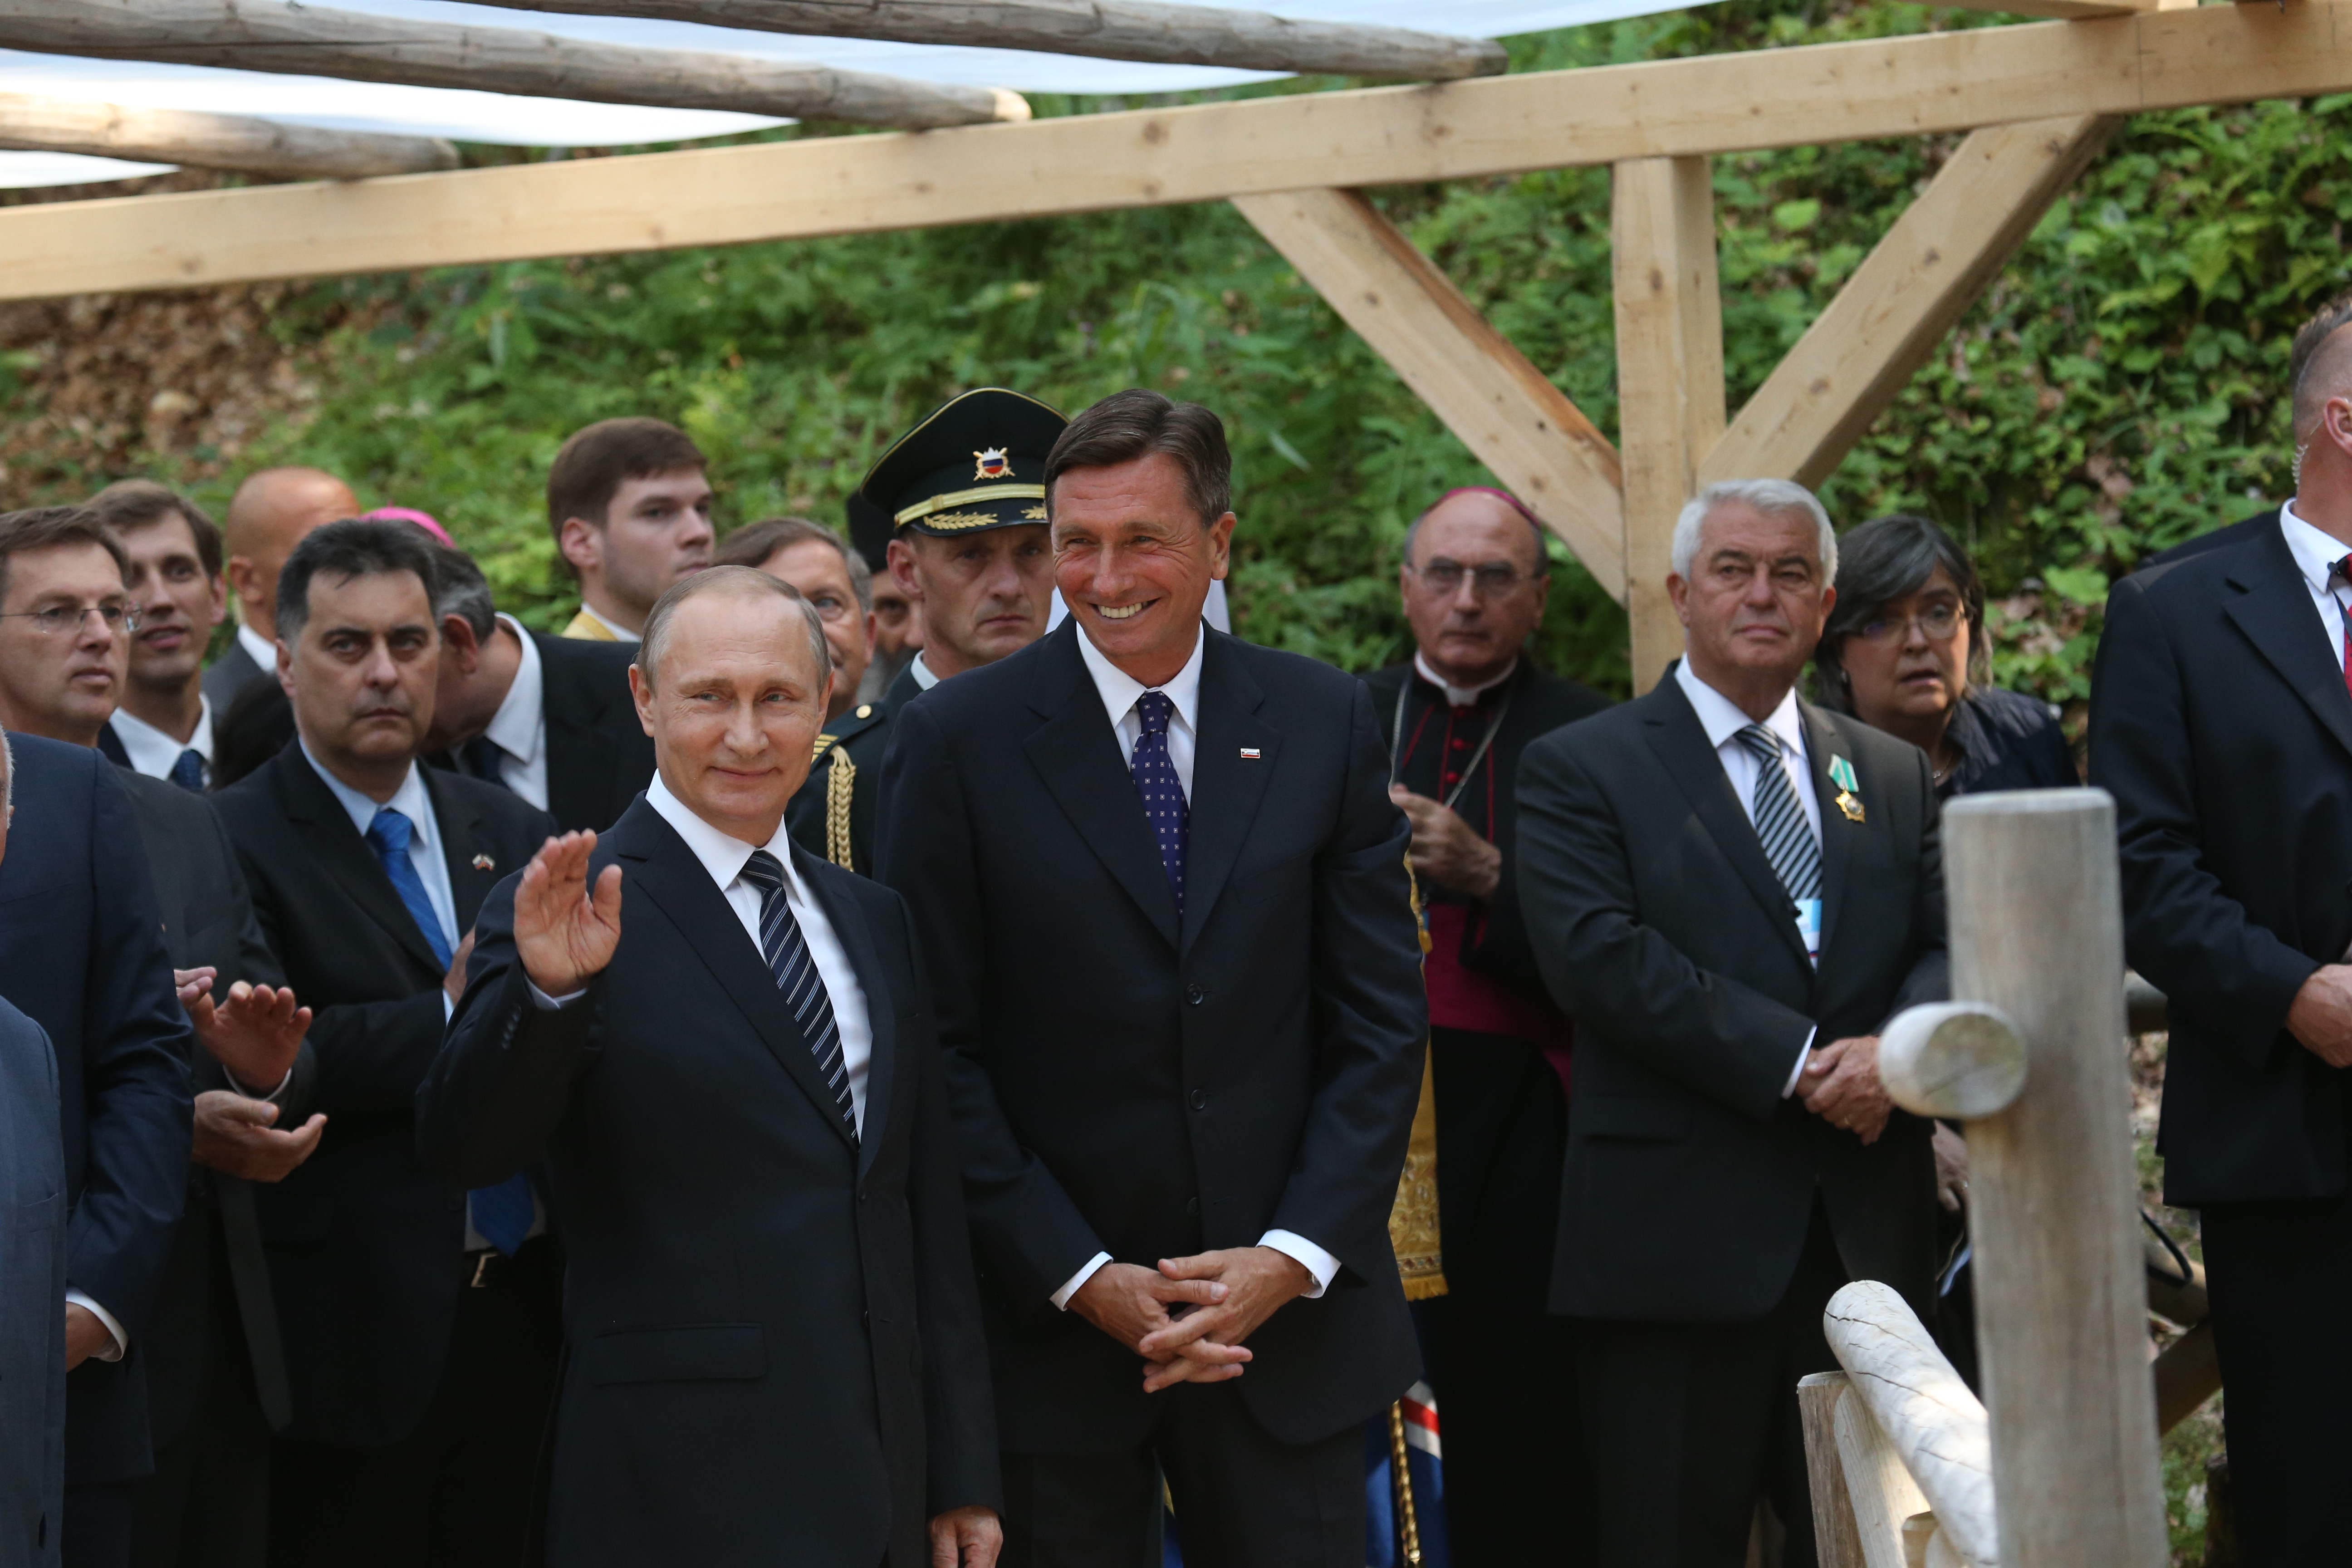 Ruski predsednik Vladimir Putin maha obiskovalcem, ki so ga na Vršiču zelo lepo sprejeli.